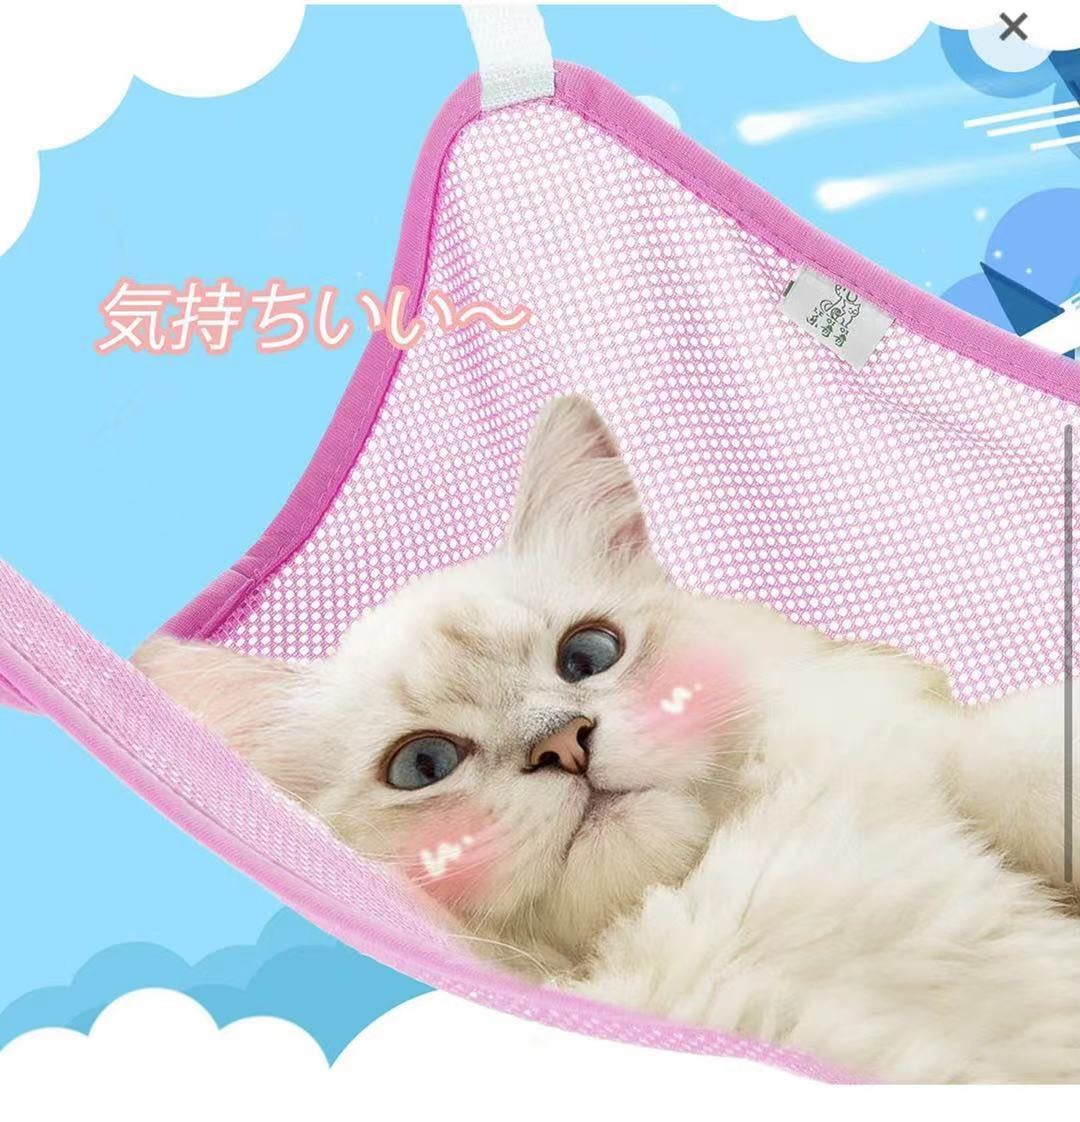  кошка гамак настройка возможность для домашних животных сетка гамак весна лето specification "дышит" 